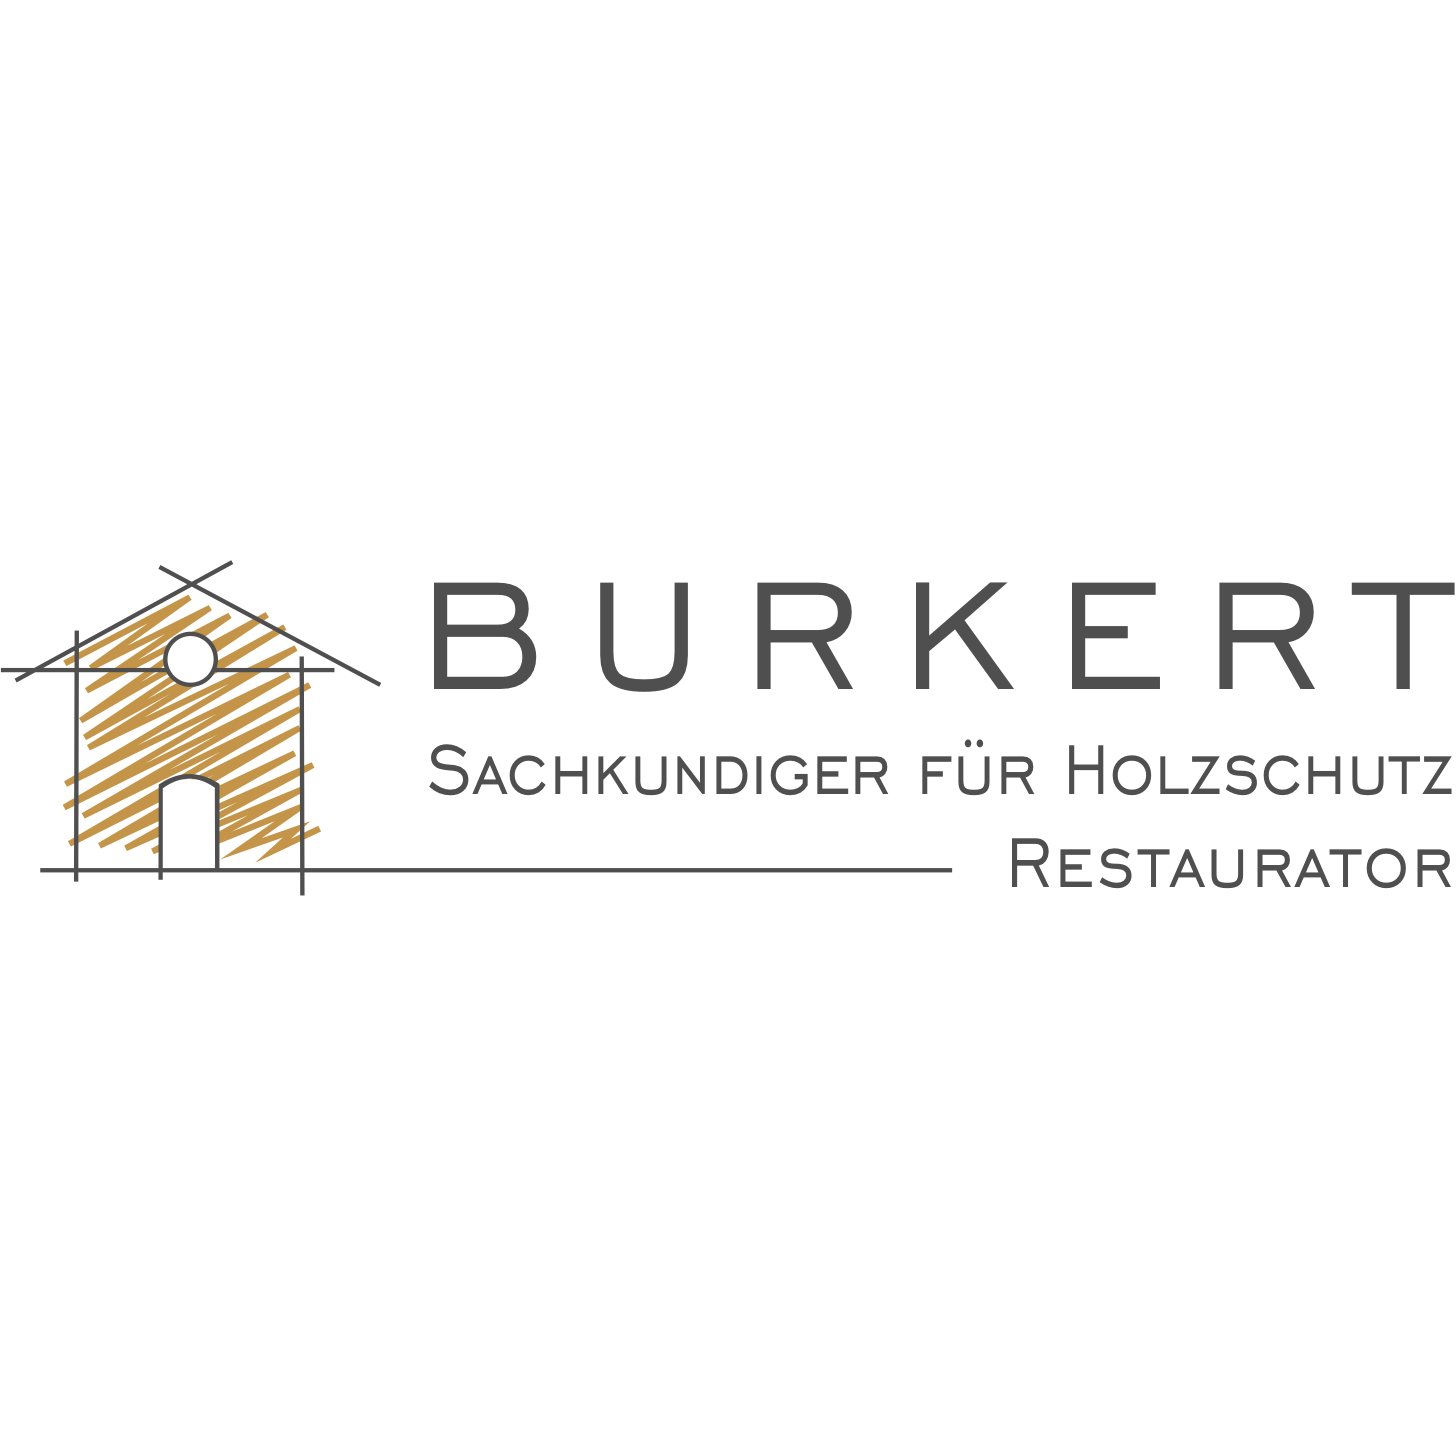 Friedemann Burkert - Sachkundiger für Holzschutz, Restaurator in Köln - Logo